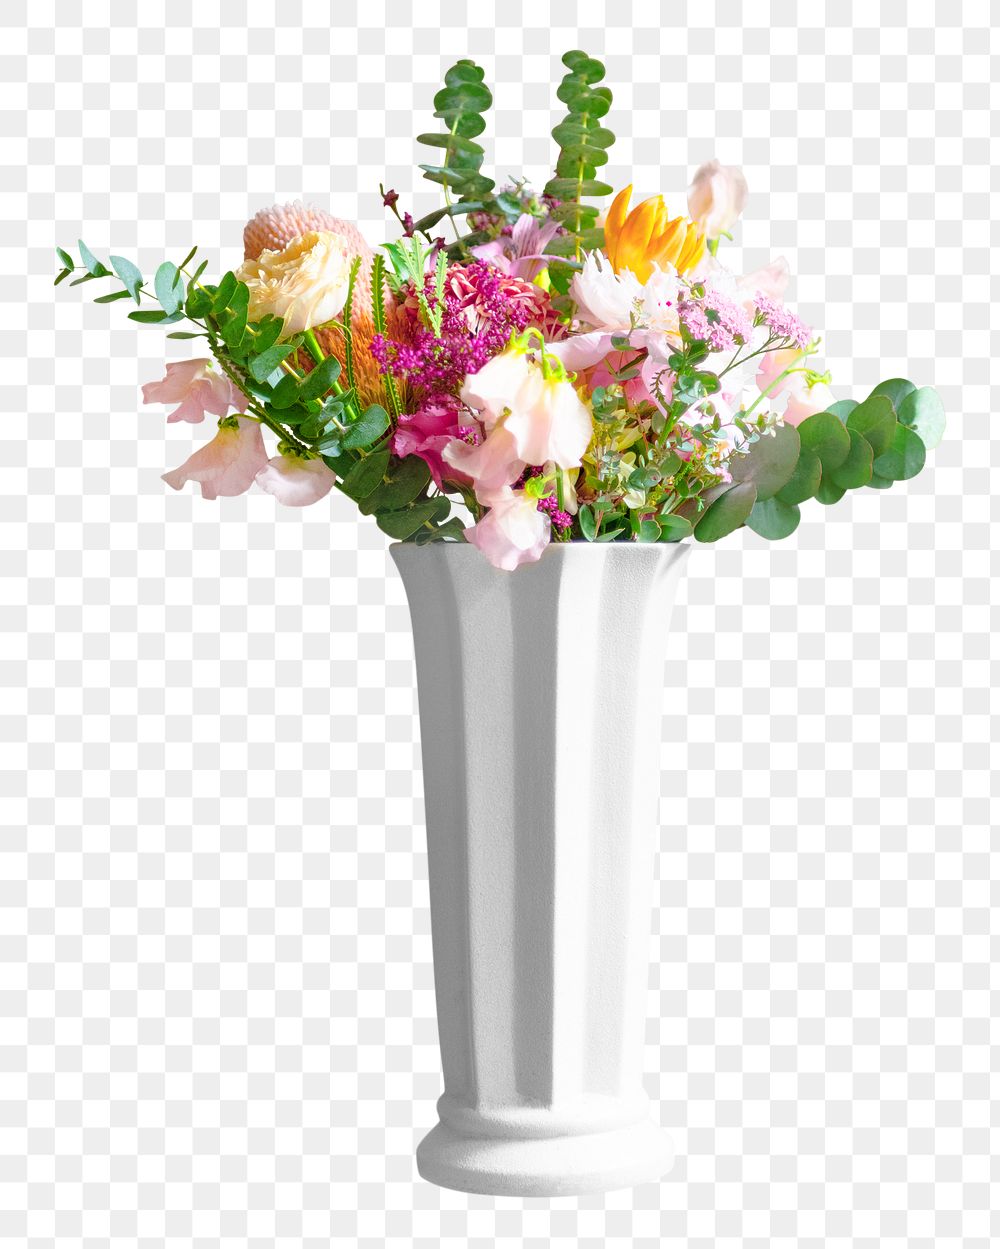 Vase flower png collage element, transparent background